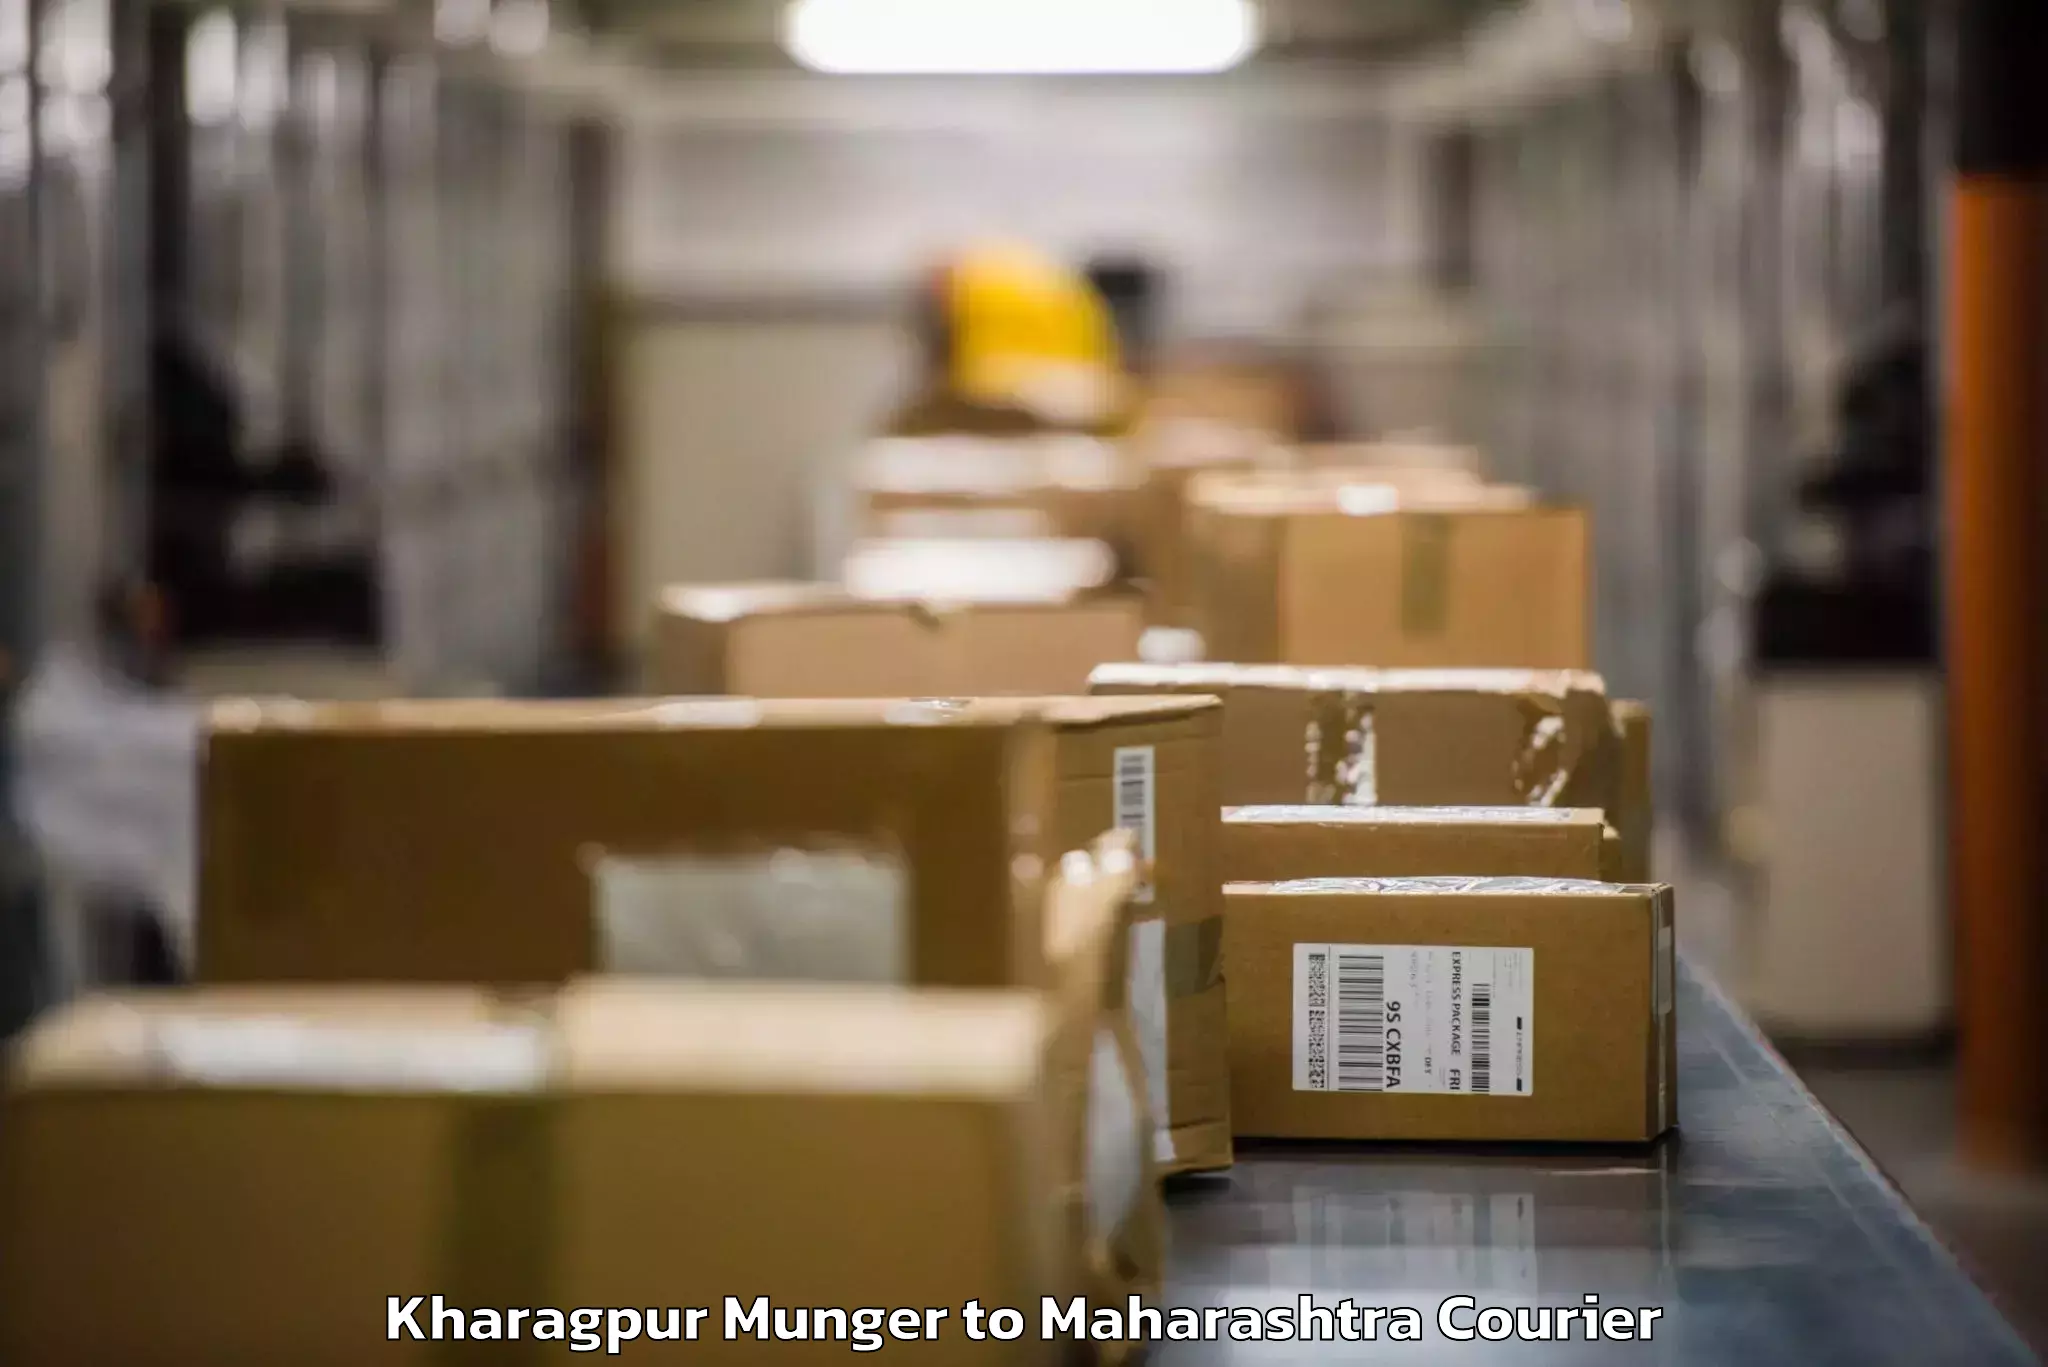 Baggage shipping calculator Kharagpur Munger to Maharashtra